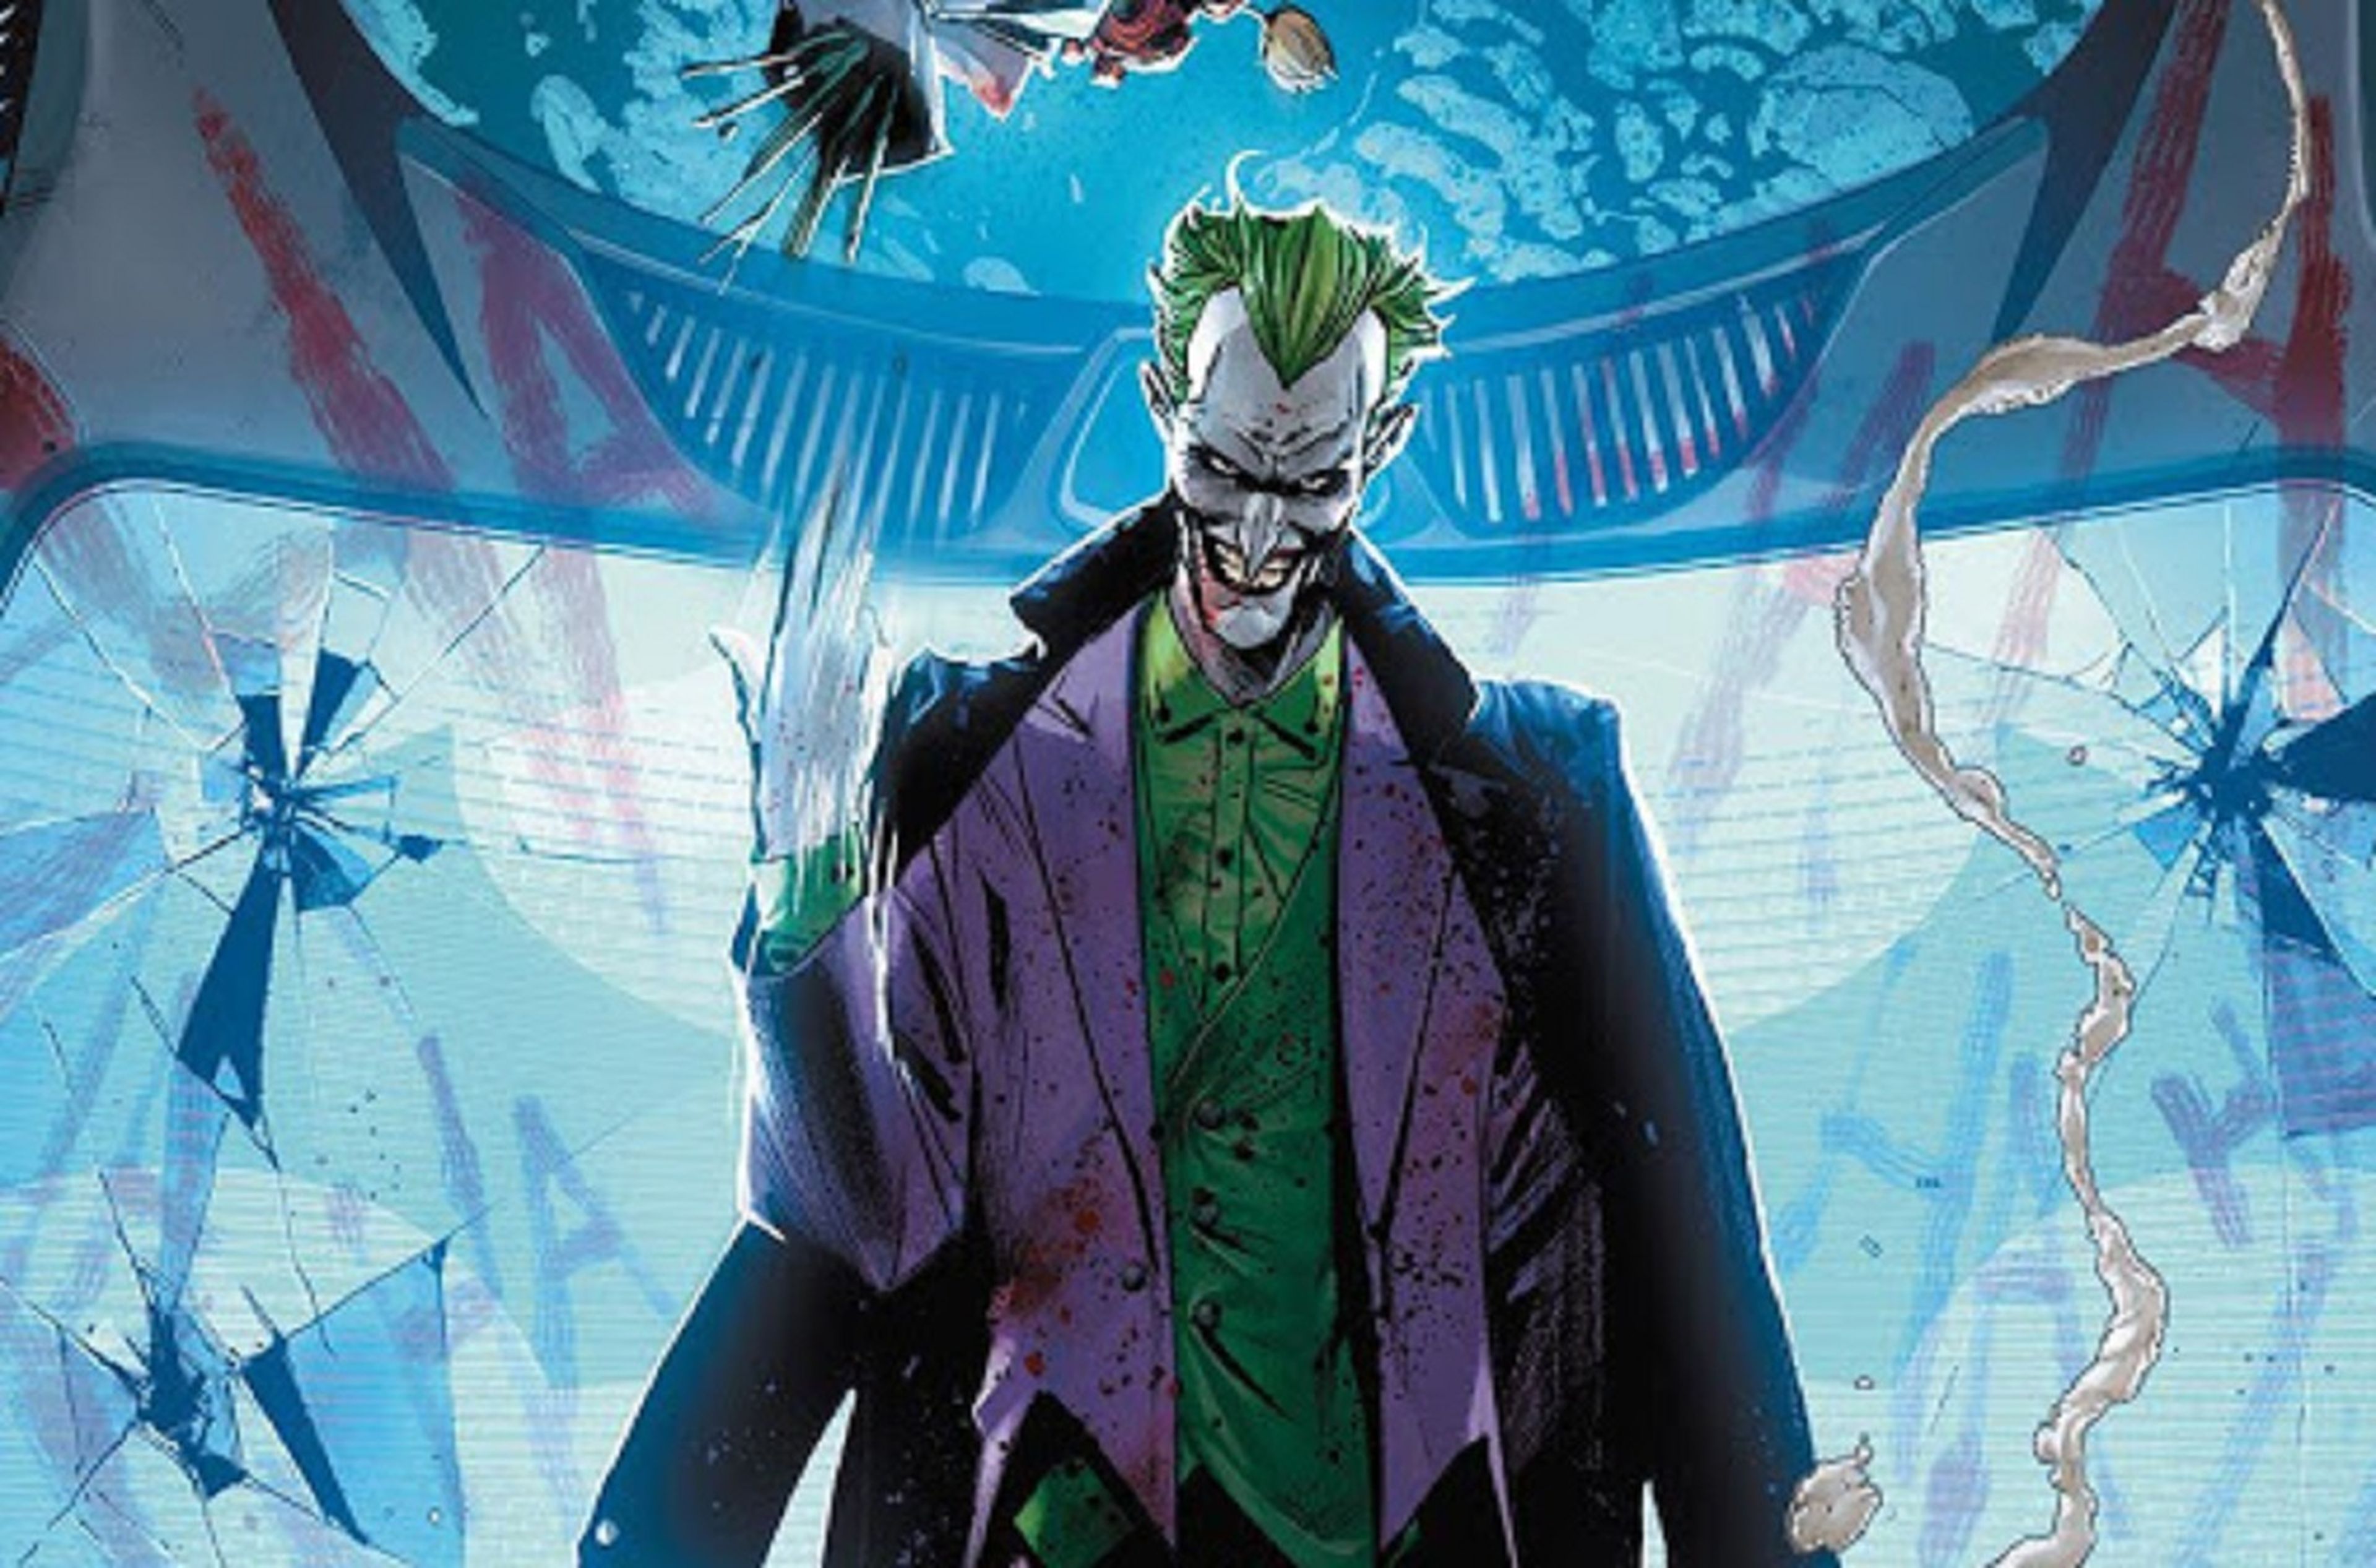 Batman: La Guerra del Joker